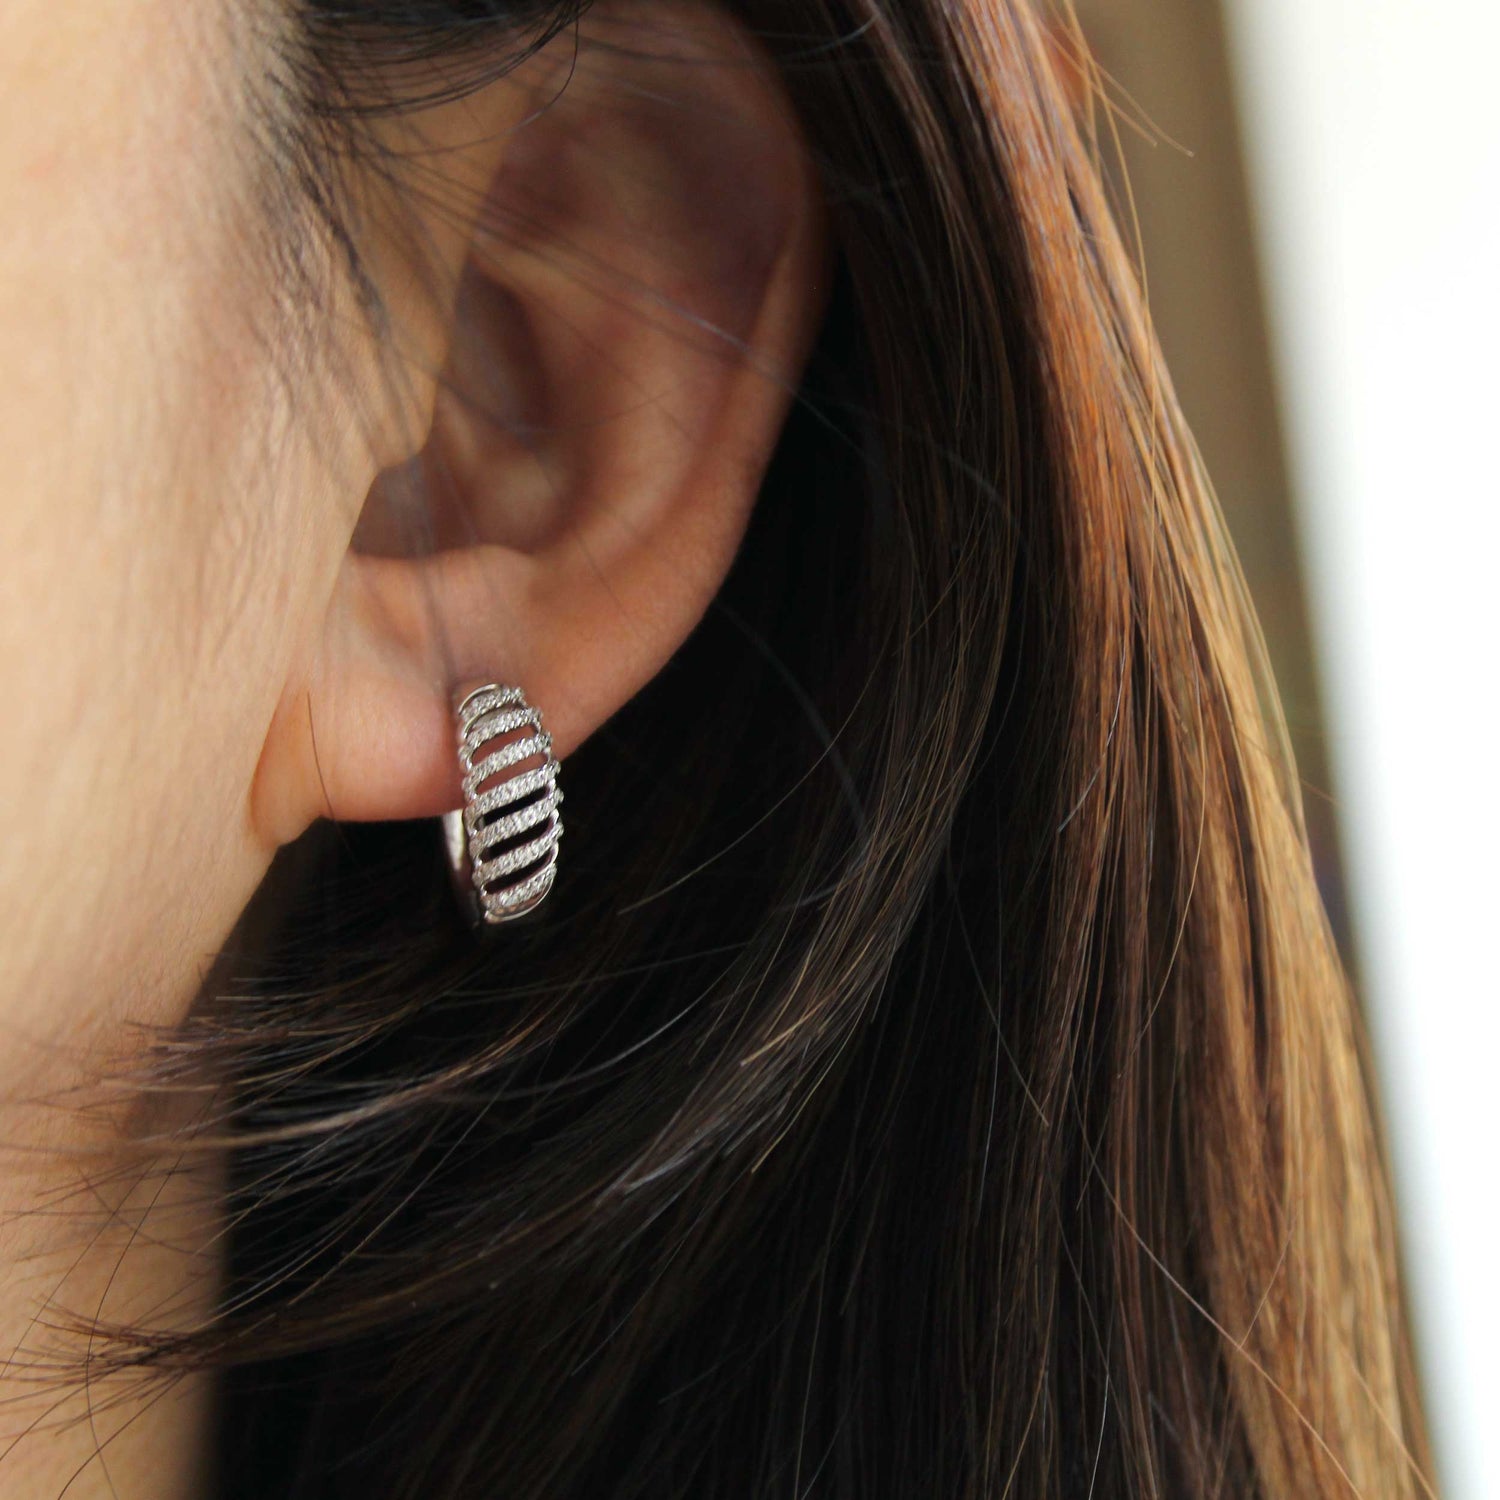 1/3 Cttw Diamond Lace Twist Dome Hoop Earrings set in 925 Sterling Silver